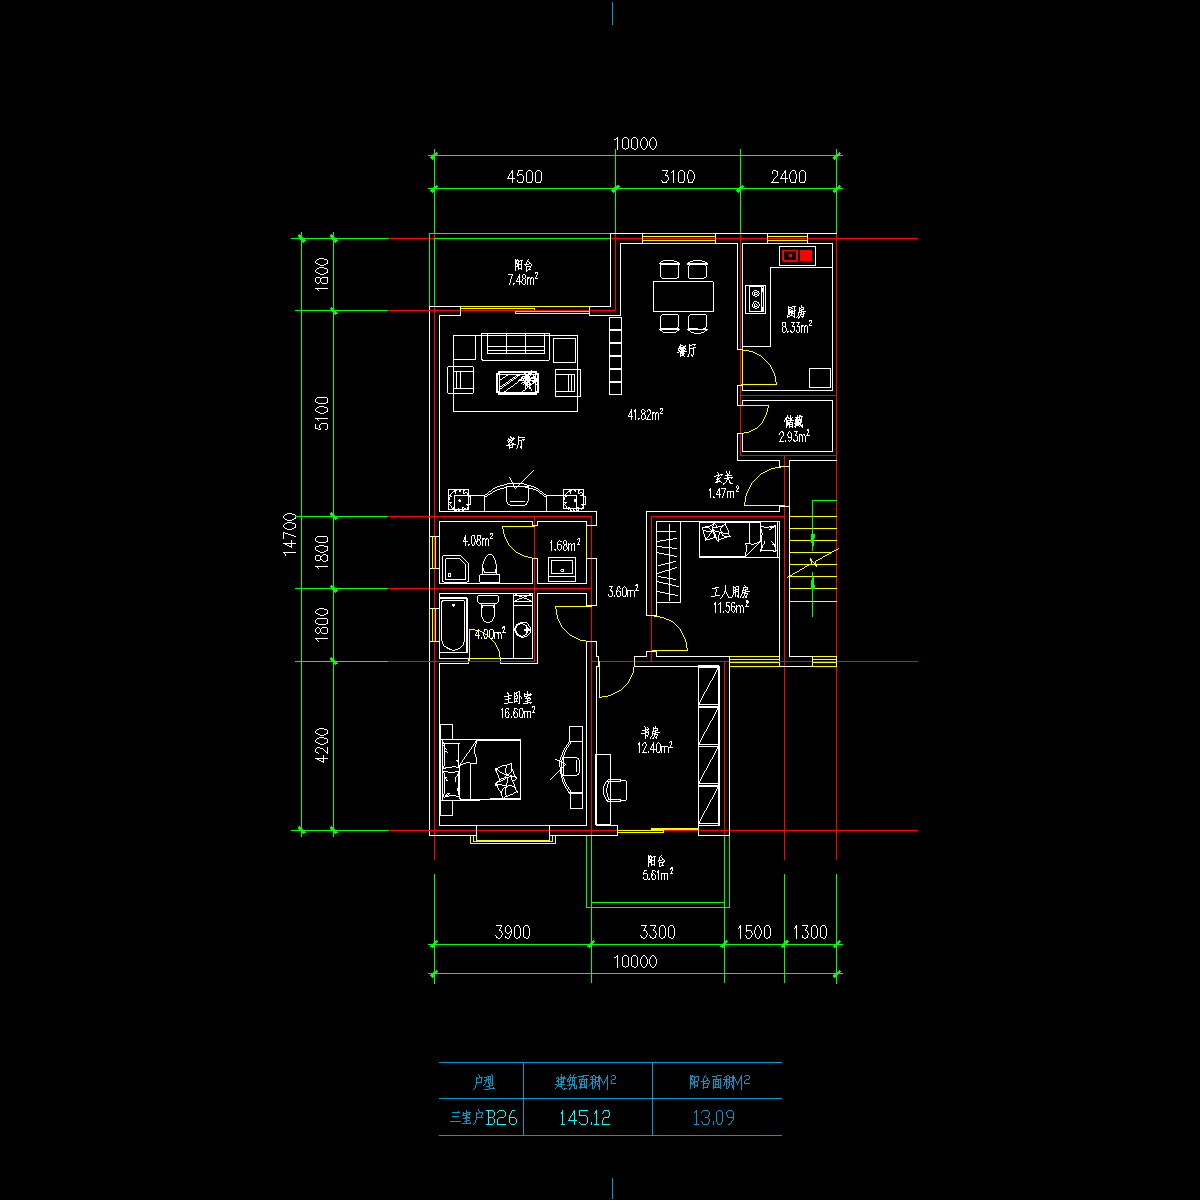 板式多层一梯两户三室一厅二卫户型CAD图纸(145/145)